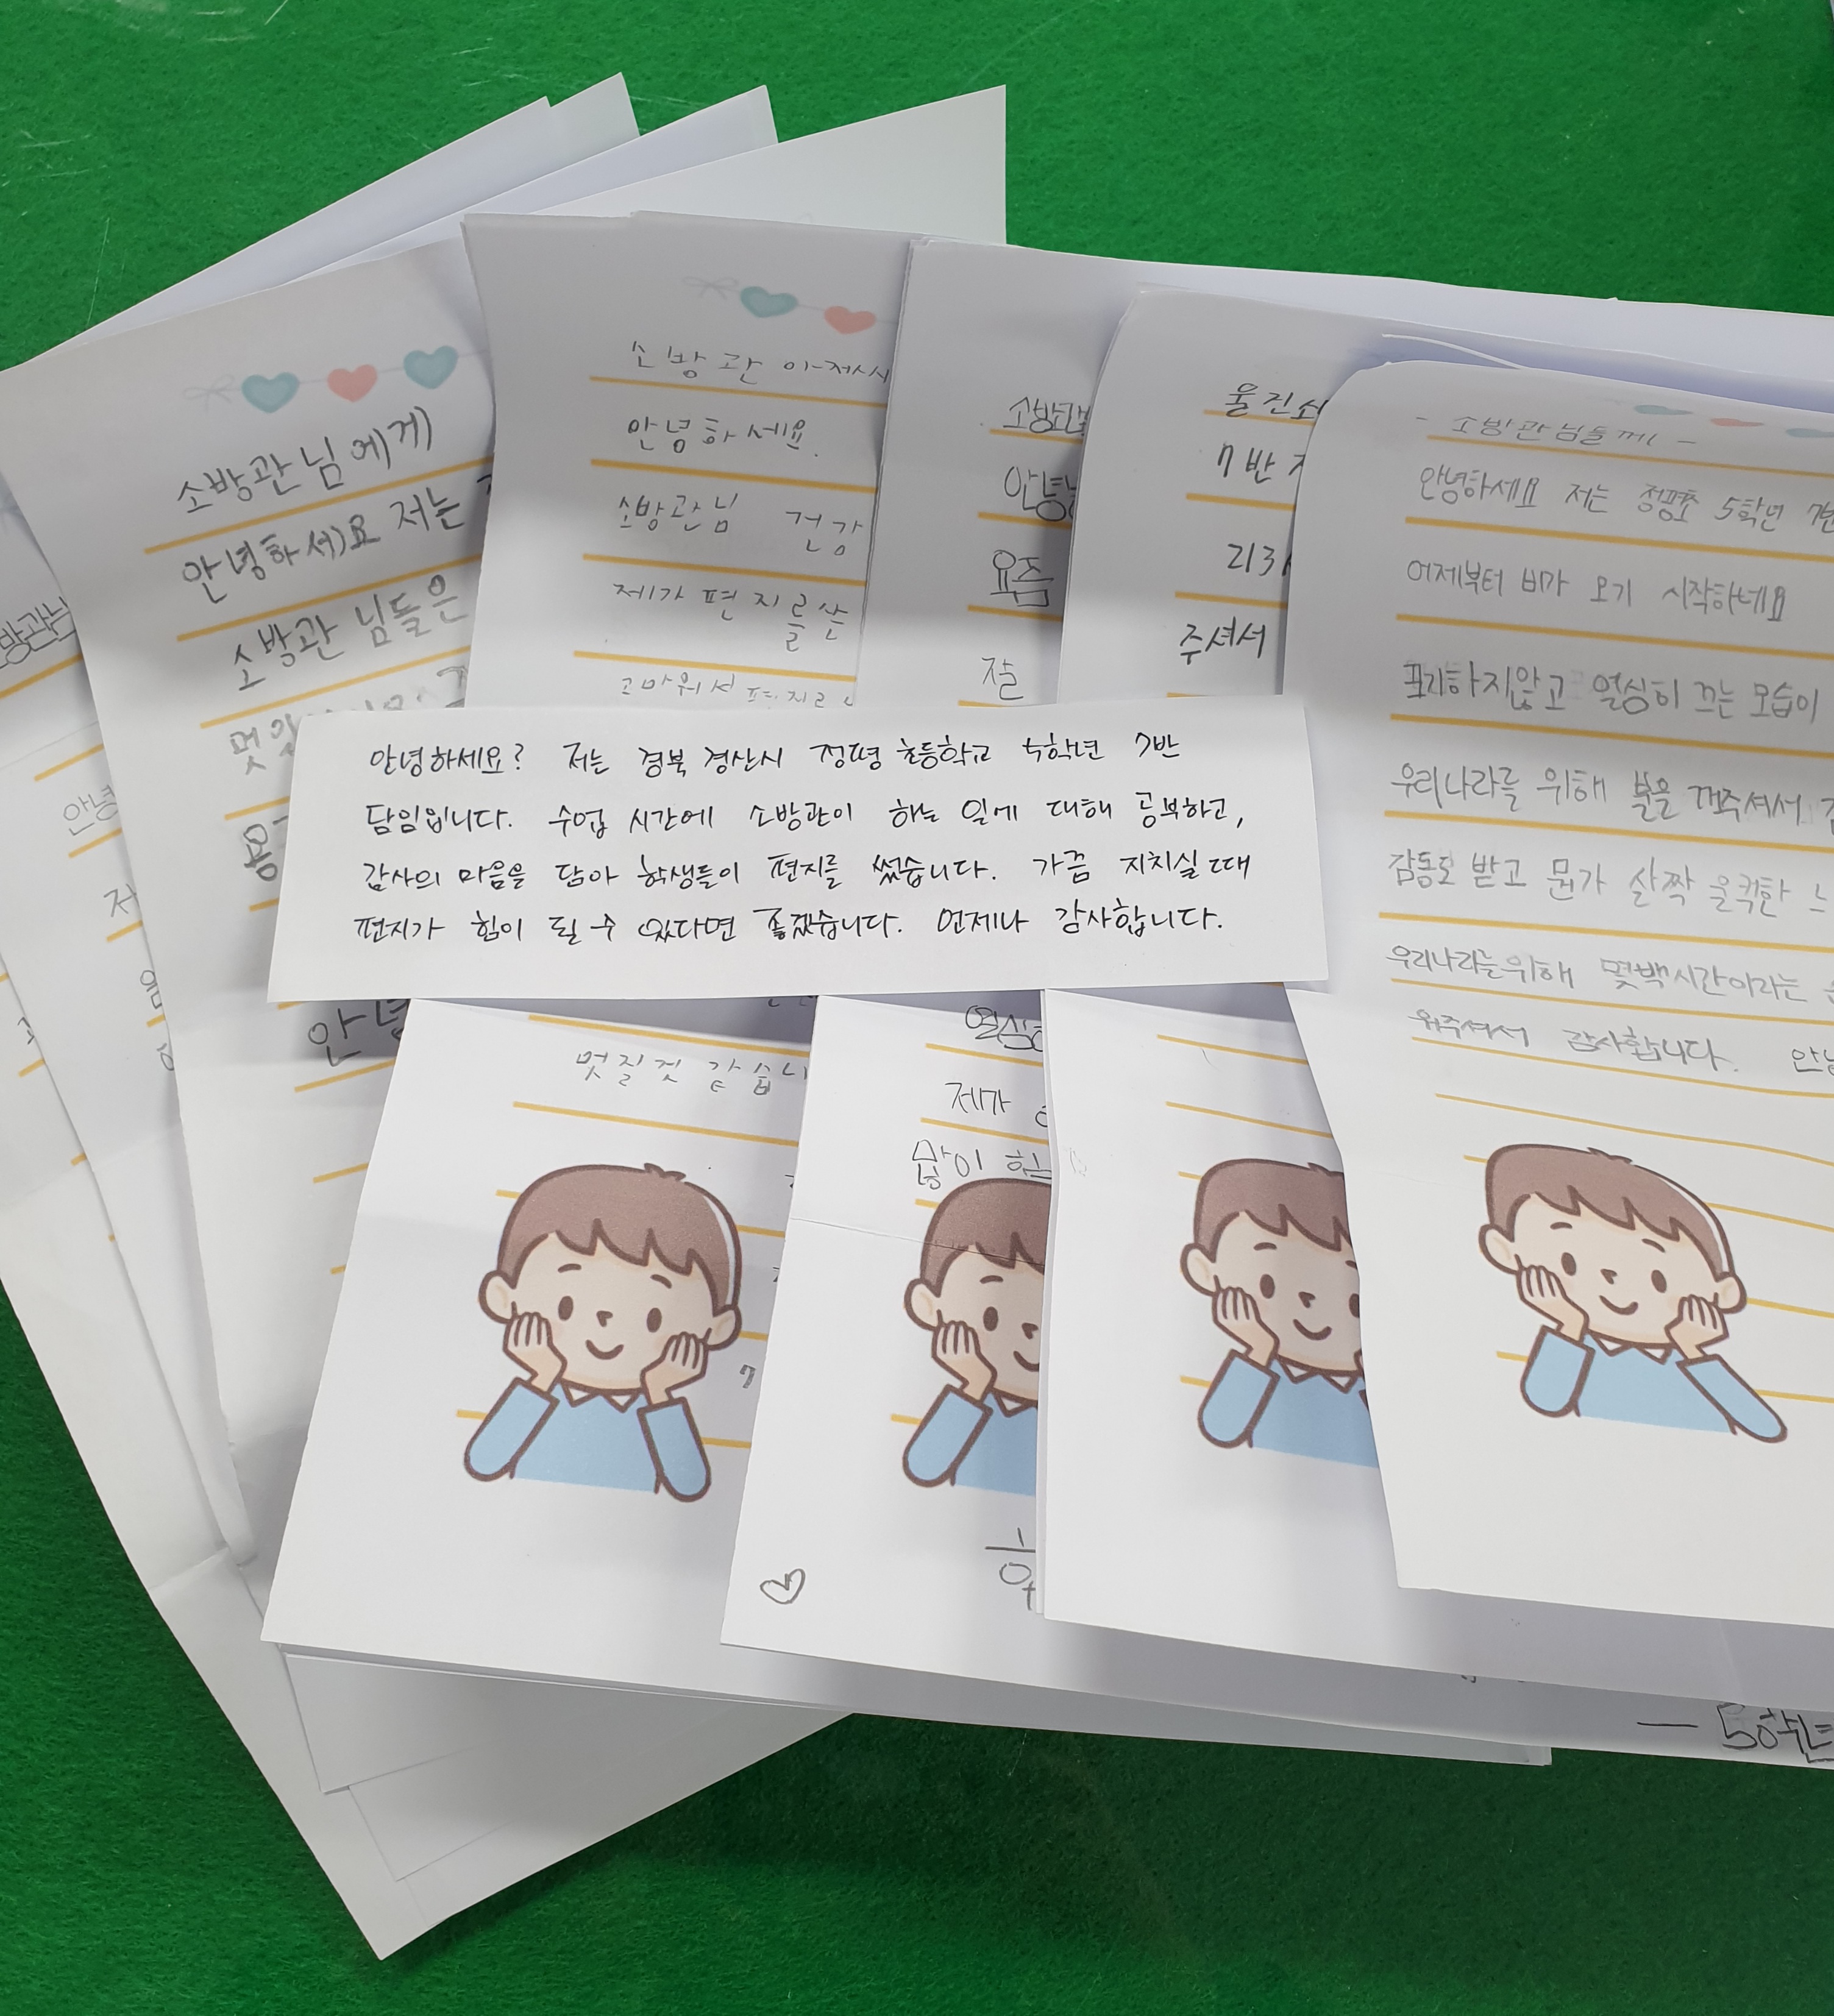 경산 정평초등학교 5학년 7반, 김포 신양초등학교 친구들의 감사편지와 포스터